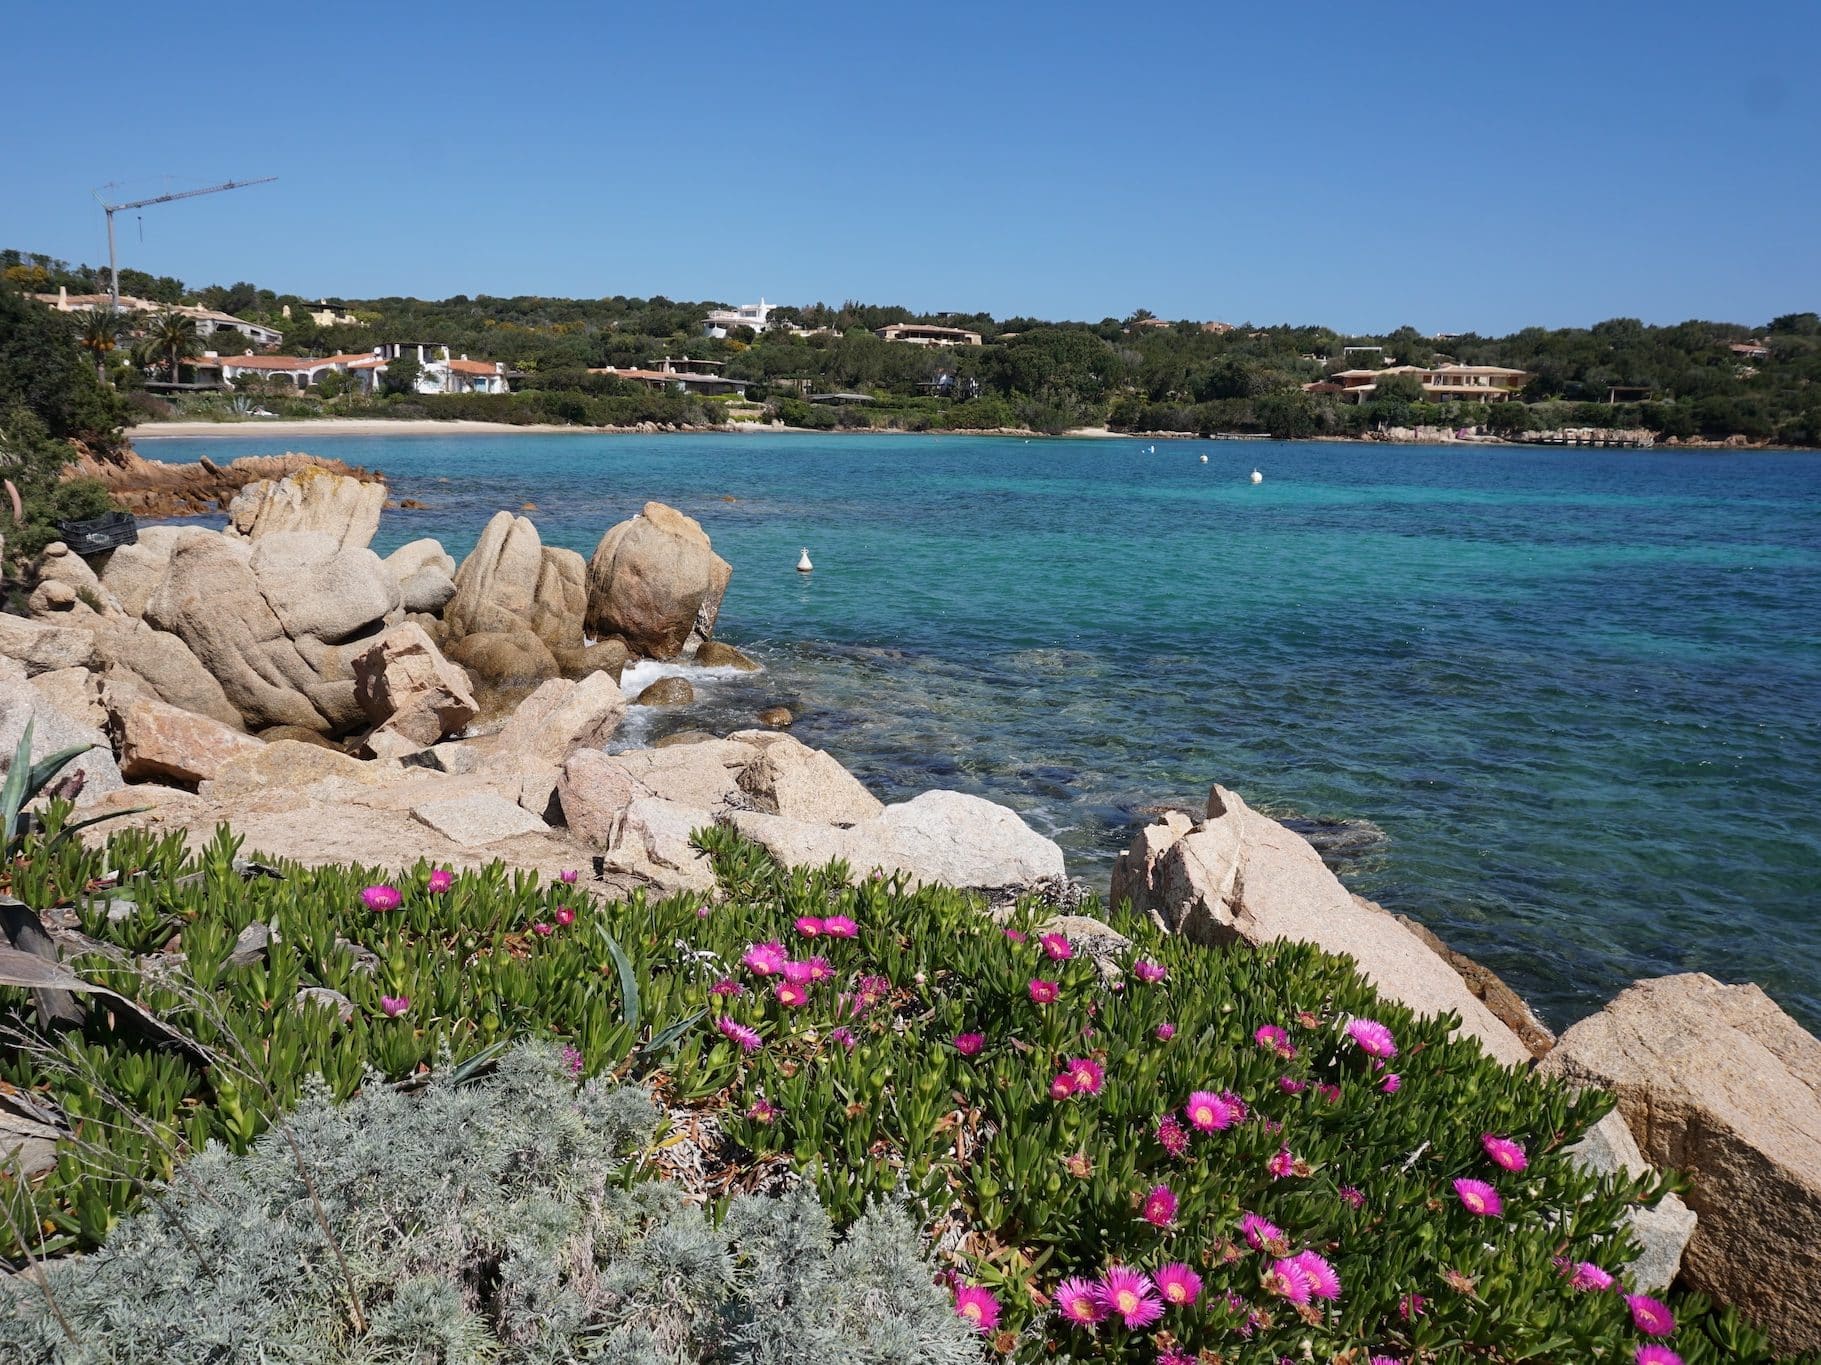 La Sardegna è l'ideale per le vacanze economiche: puoi risparmiare molti soldi, soprattutto in bassa stagione. Foto: Sascha Tegtmeyer Vacanze economiche - Suggerimenti - Prenota viaggi economici